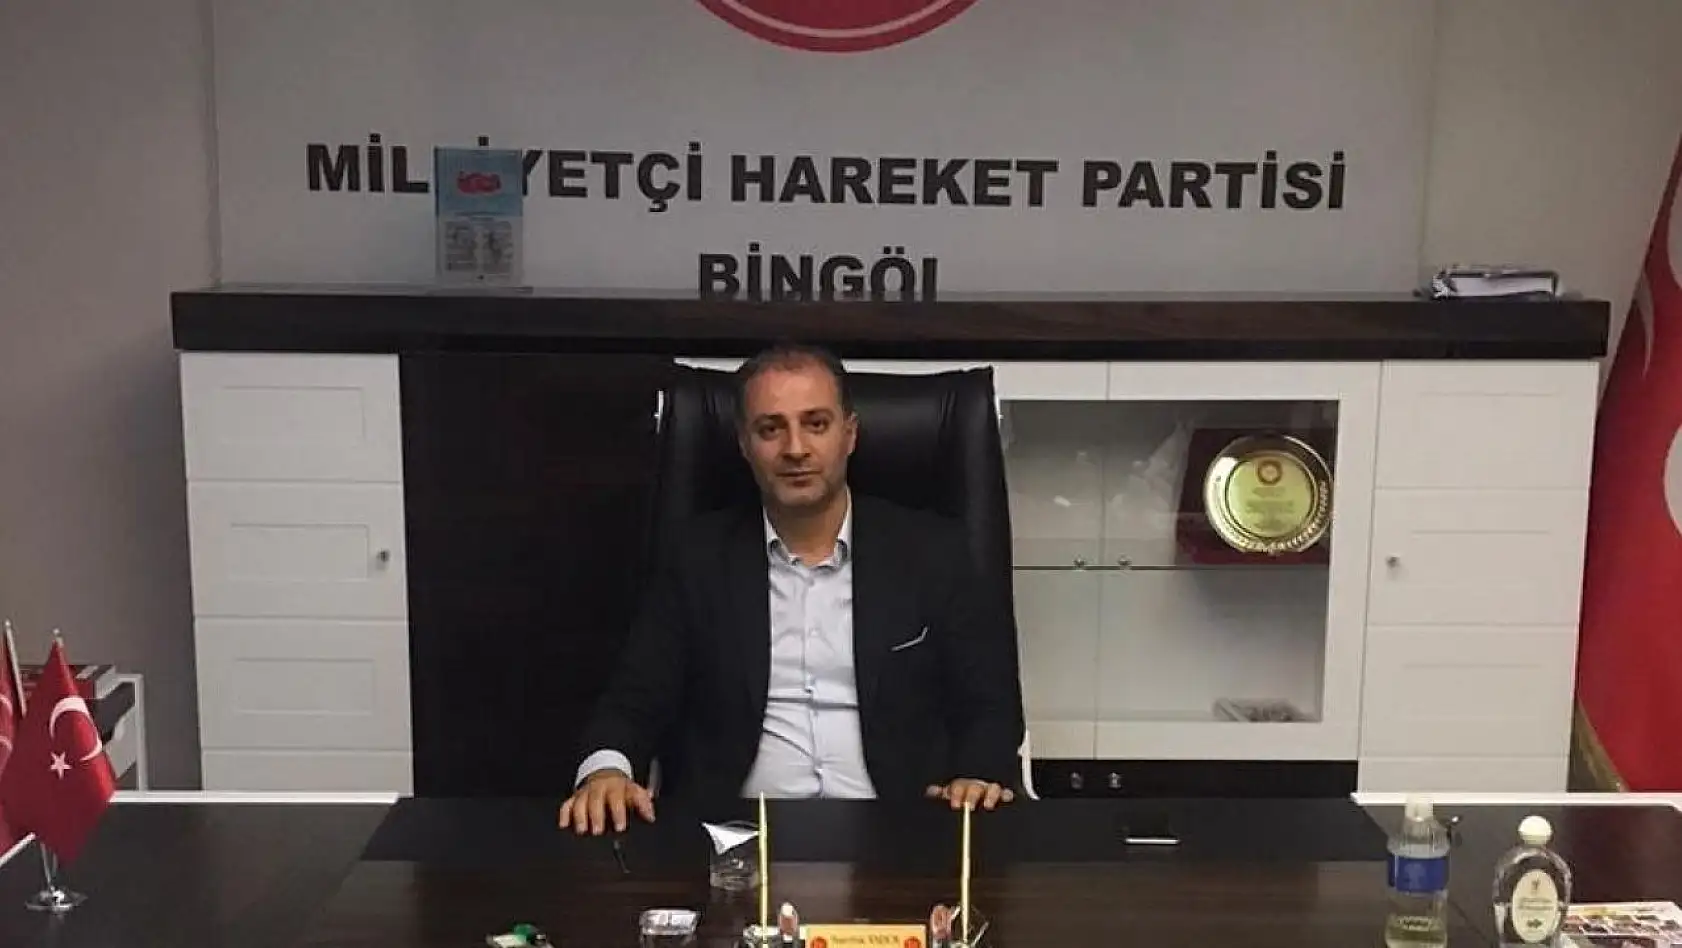 Bingöl MHP İl Başkanı Osman Zeki Baran oldu